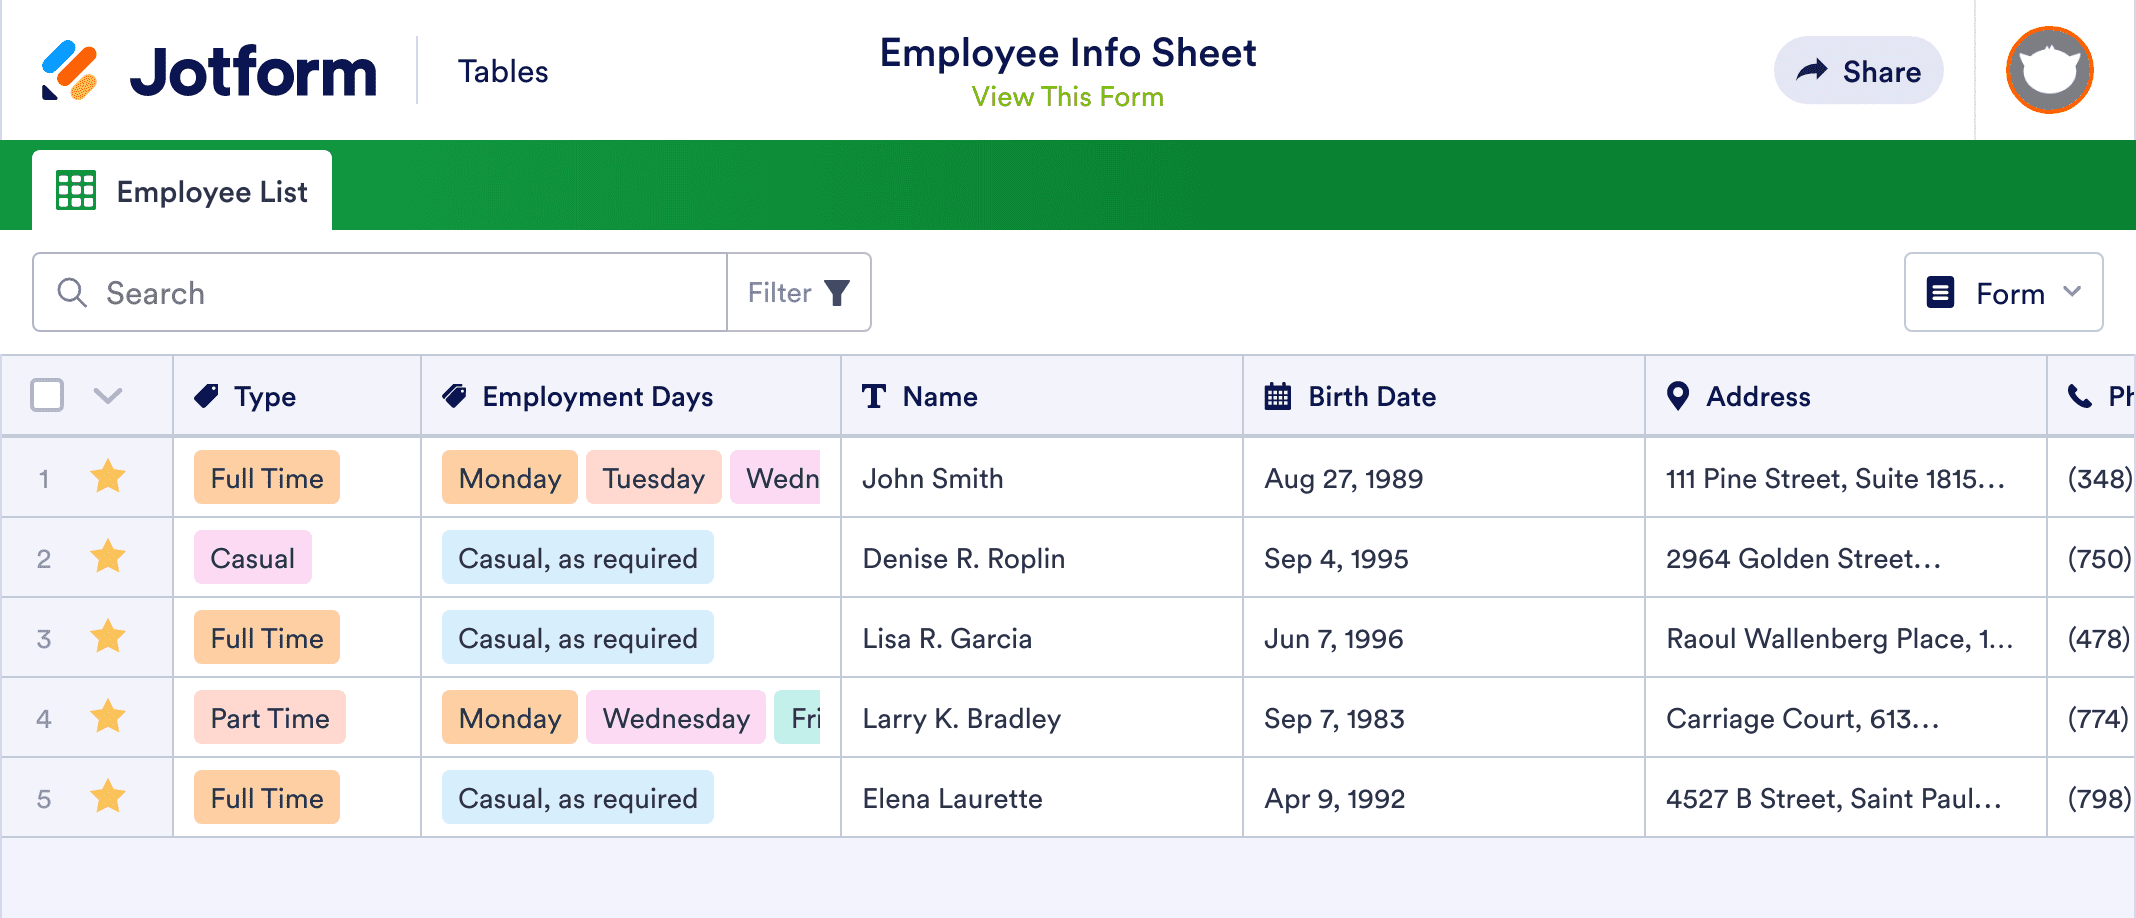 Employee Info Sheet